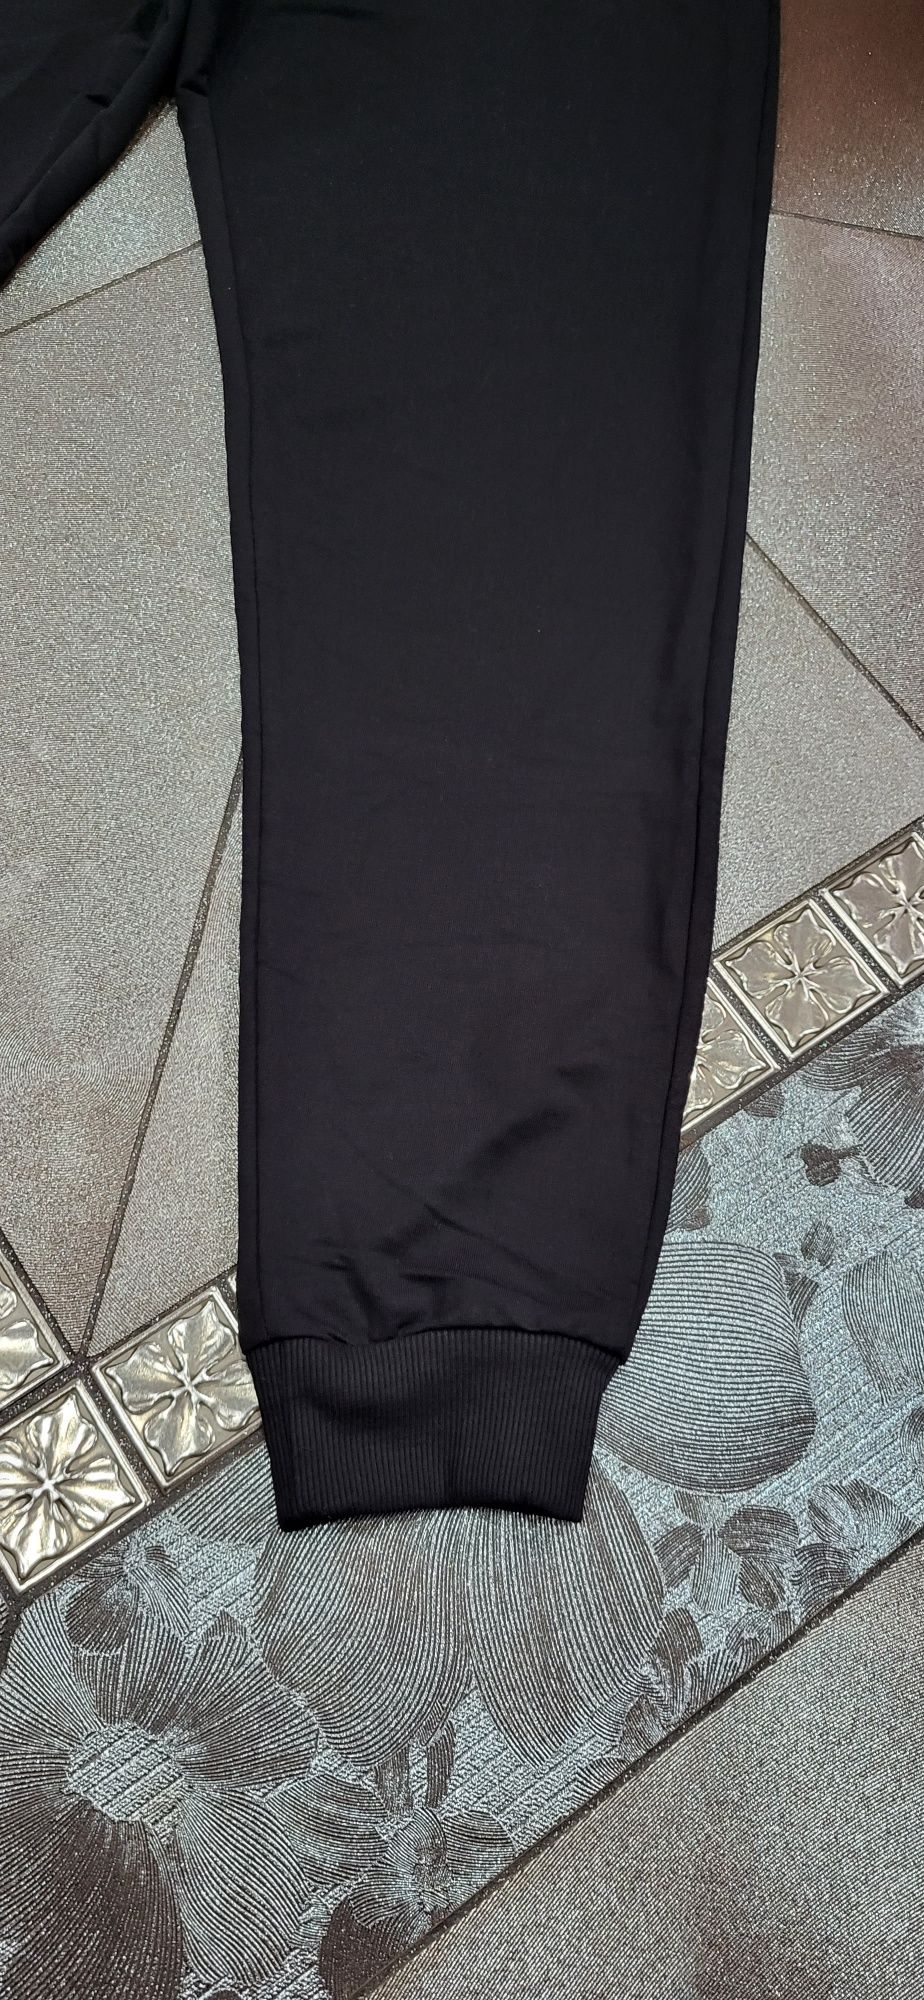 Spodnie dresowe męskie młodzieżowe czarne bawełna premium nike M